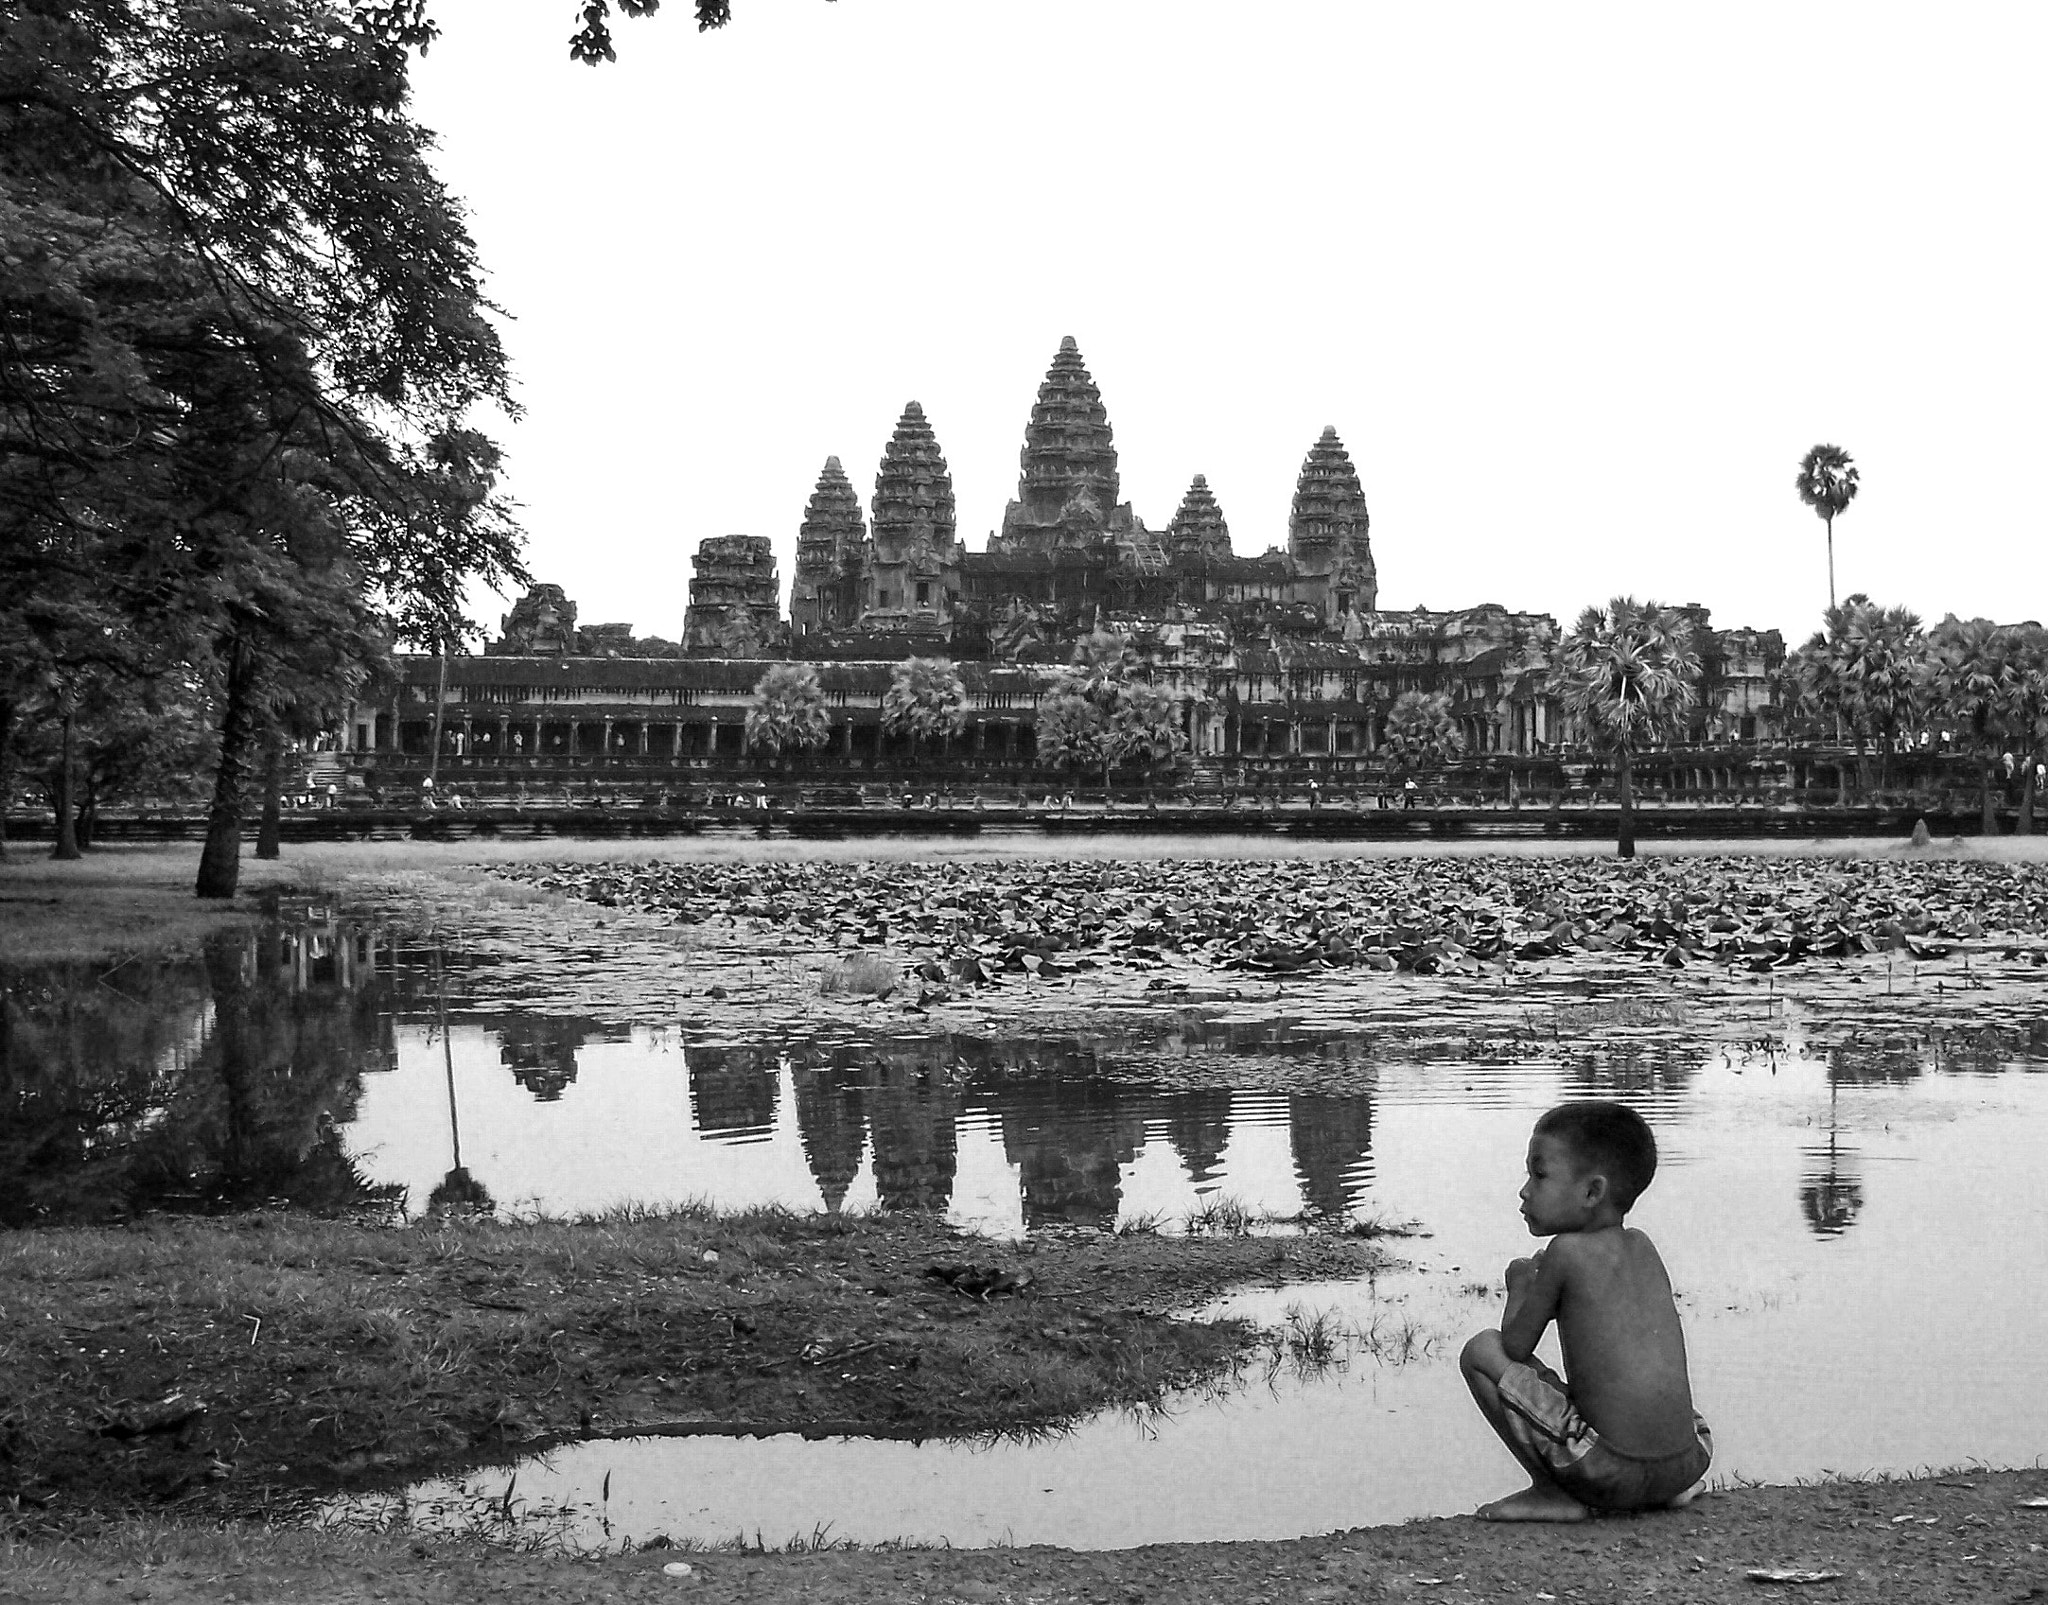 Kodak DX4530 ZOOM DIGITAL CAMERA sample photo. Ankor (cambodia) photography